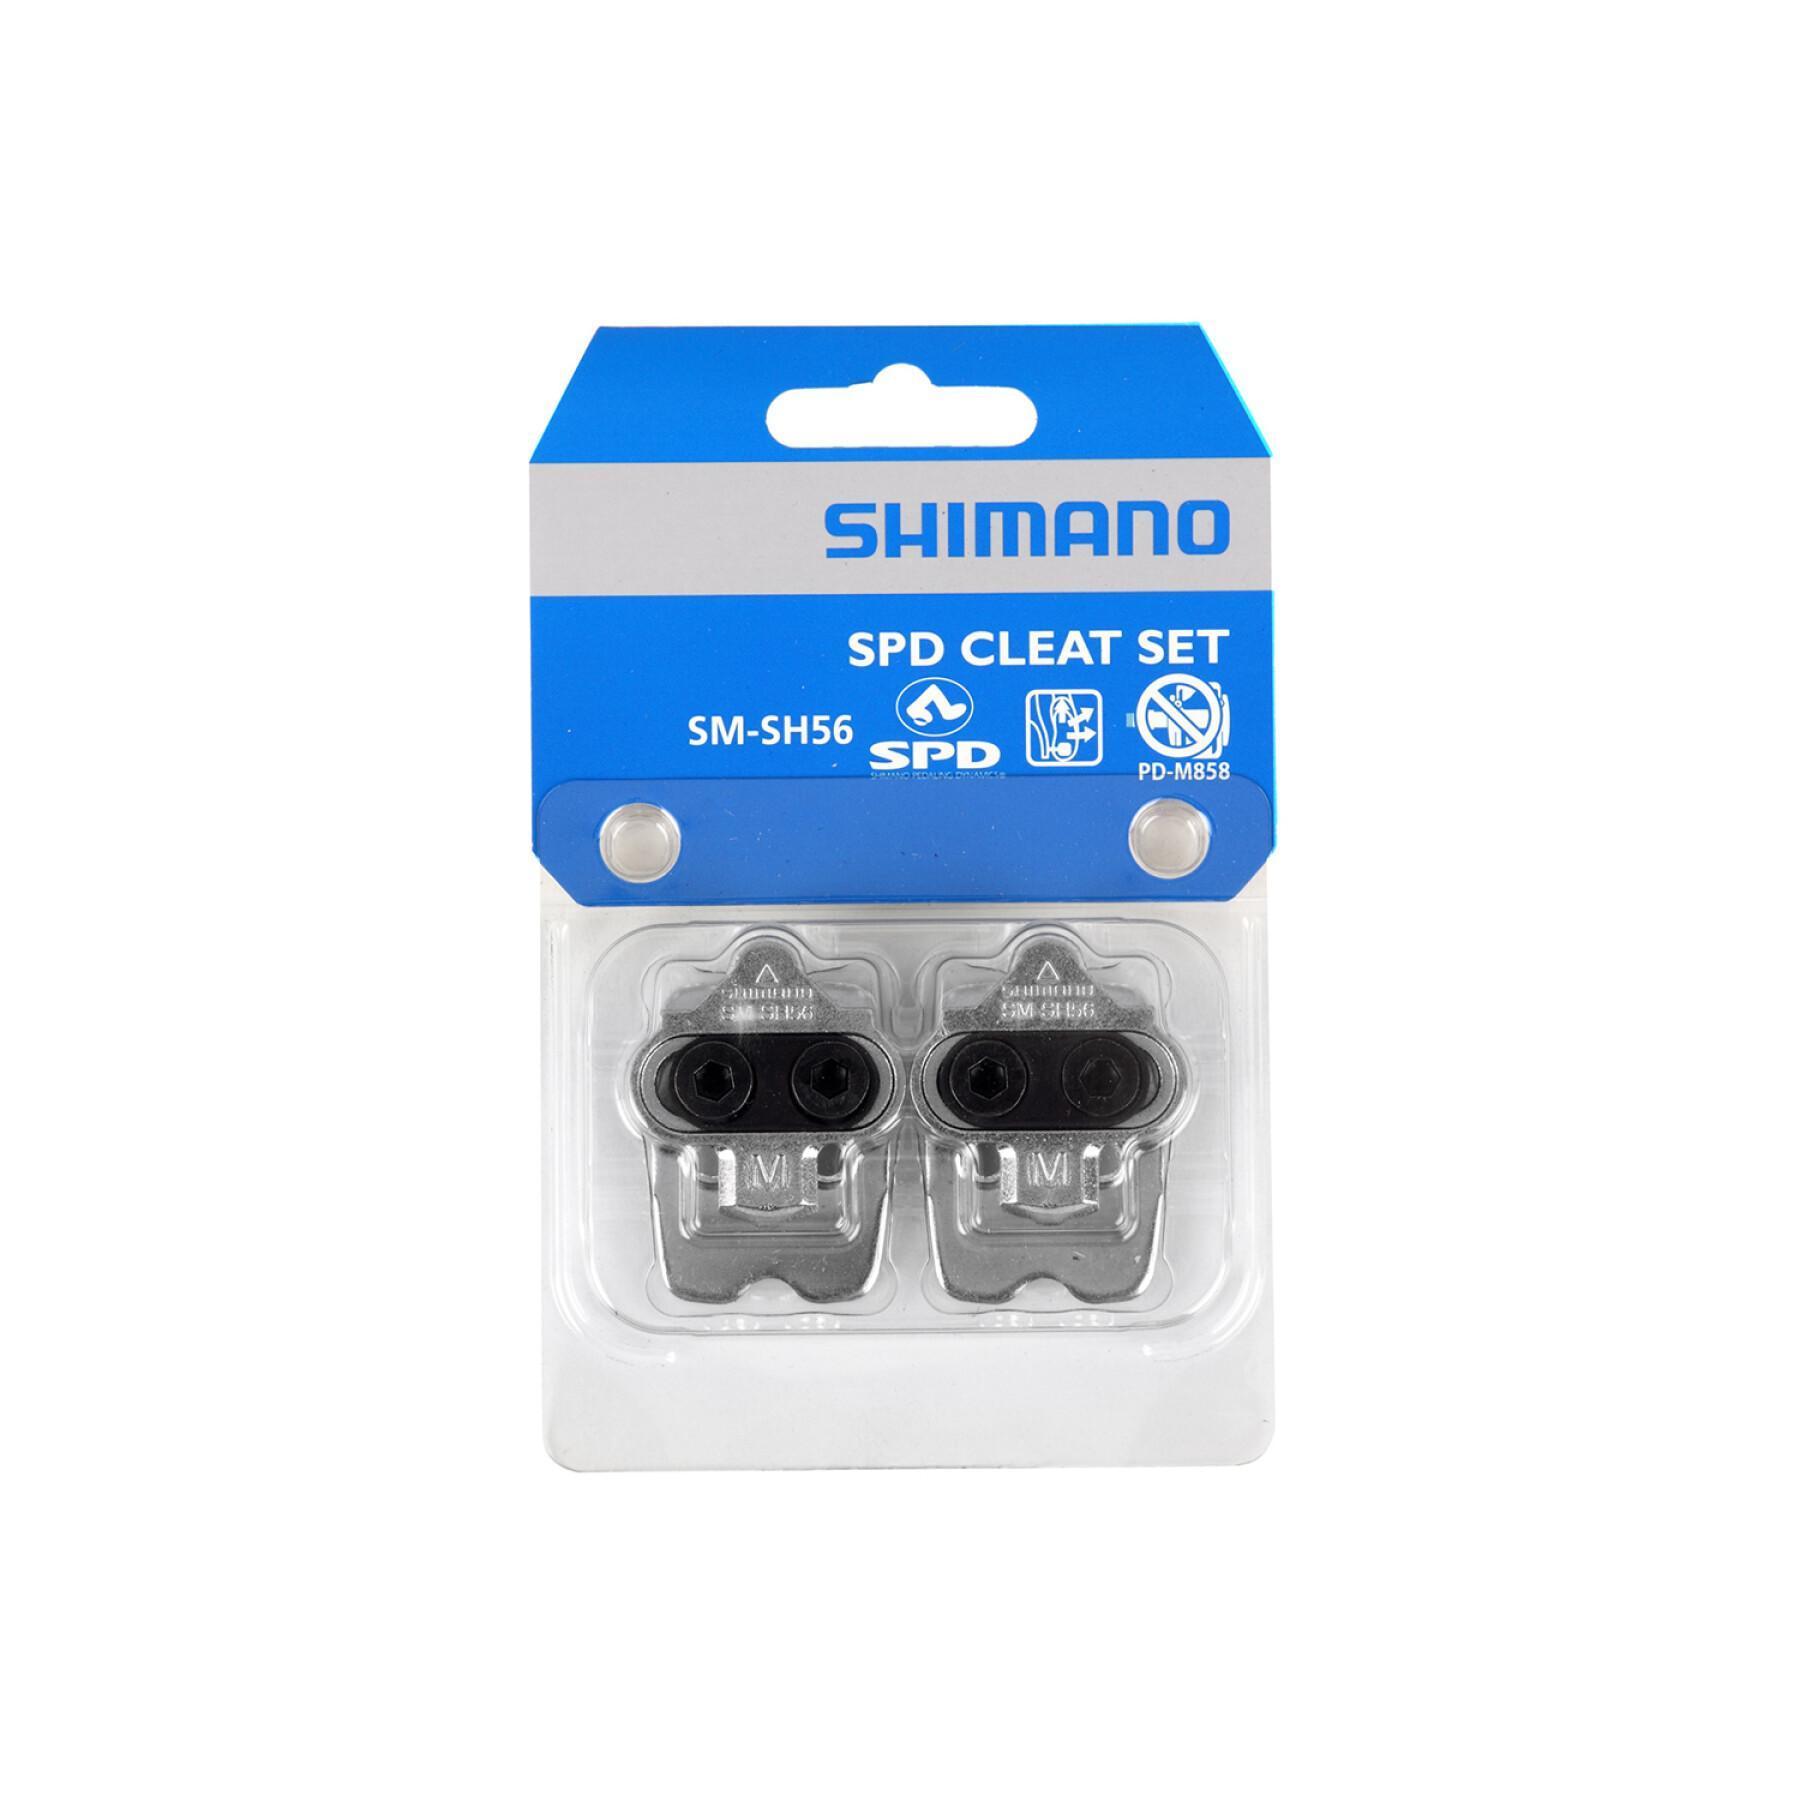 Cuñas multidireccionales con placas Shimano sm-sh56 spd